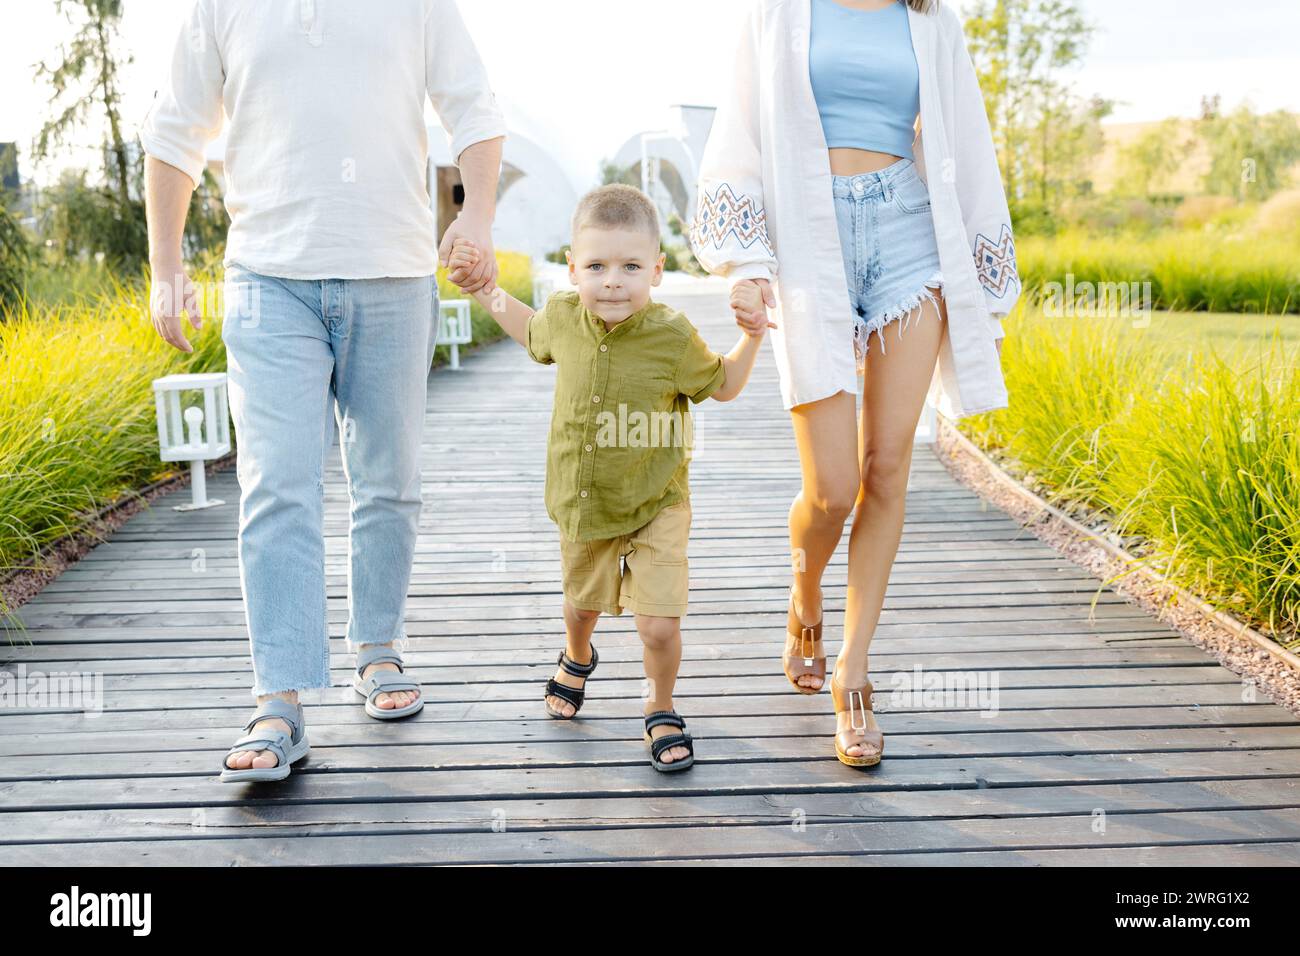 Un homme et une femme marchent dehors avec leur petit enfant. La famille profite d'une promenade ensemble. Banque D'Images